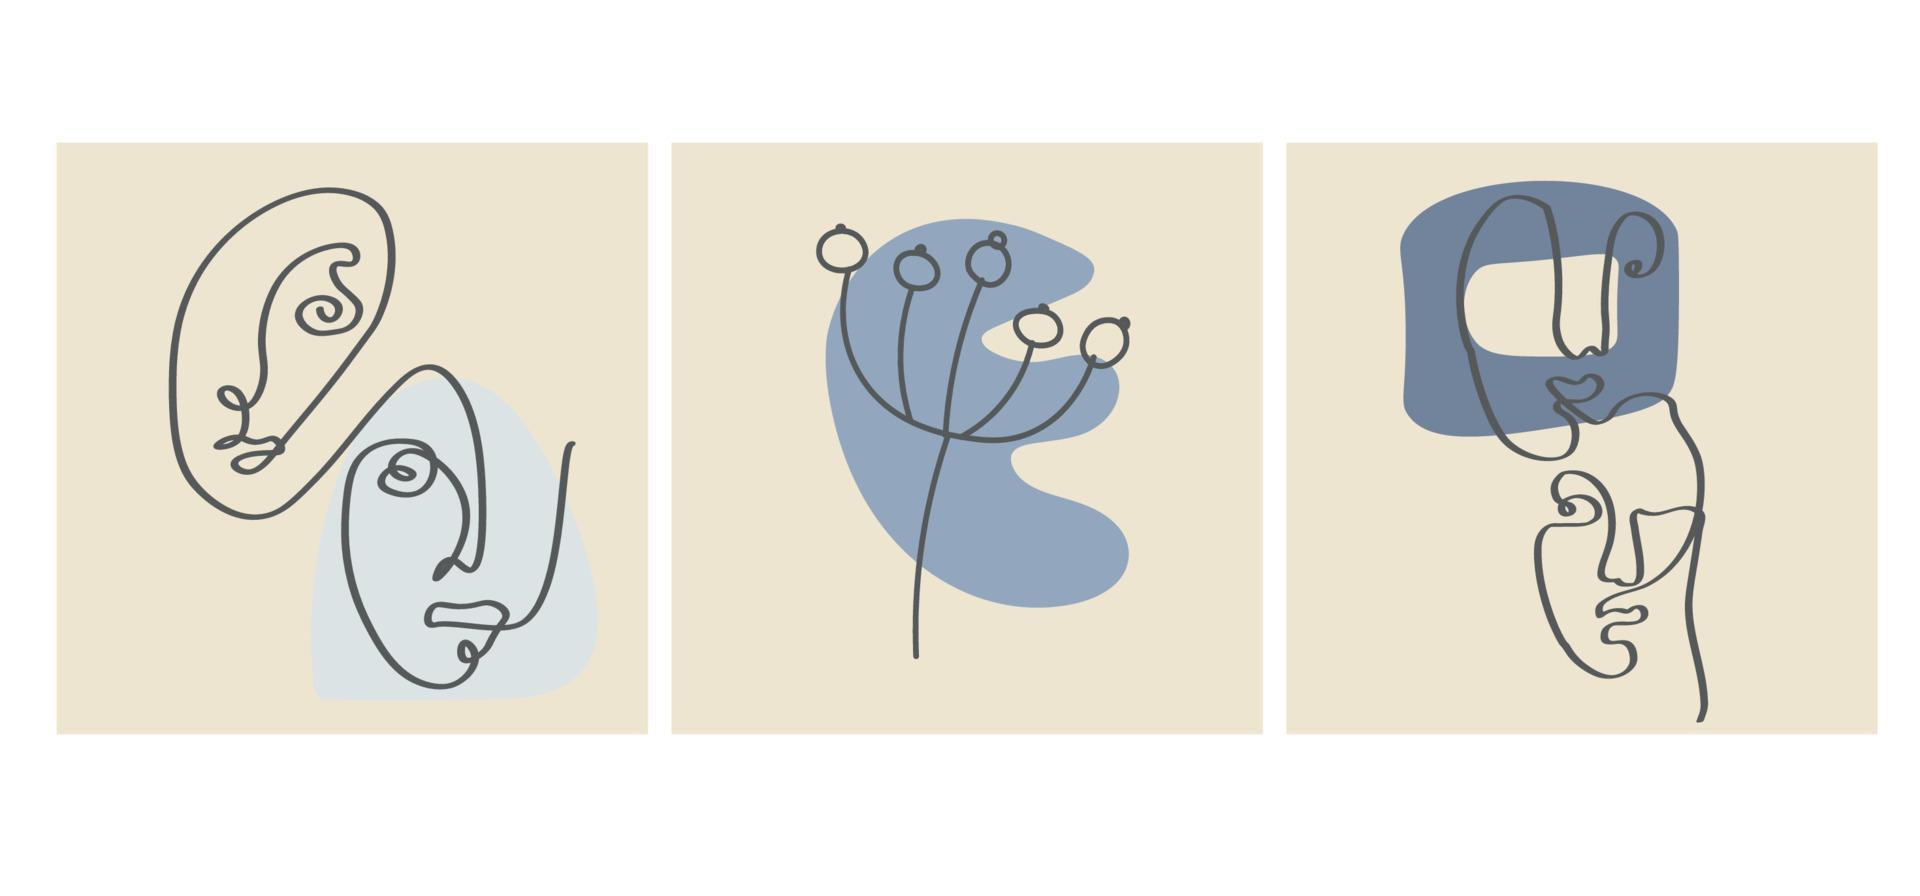 varias caras, hojas y formas abstractas. ilustraciones vectoriales contemporáneas sobre fondos de color. línea, concepto elegante minimalista. perfecto para redes sociales, tarjetas, postales. vector